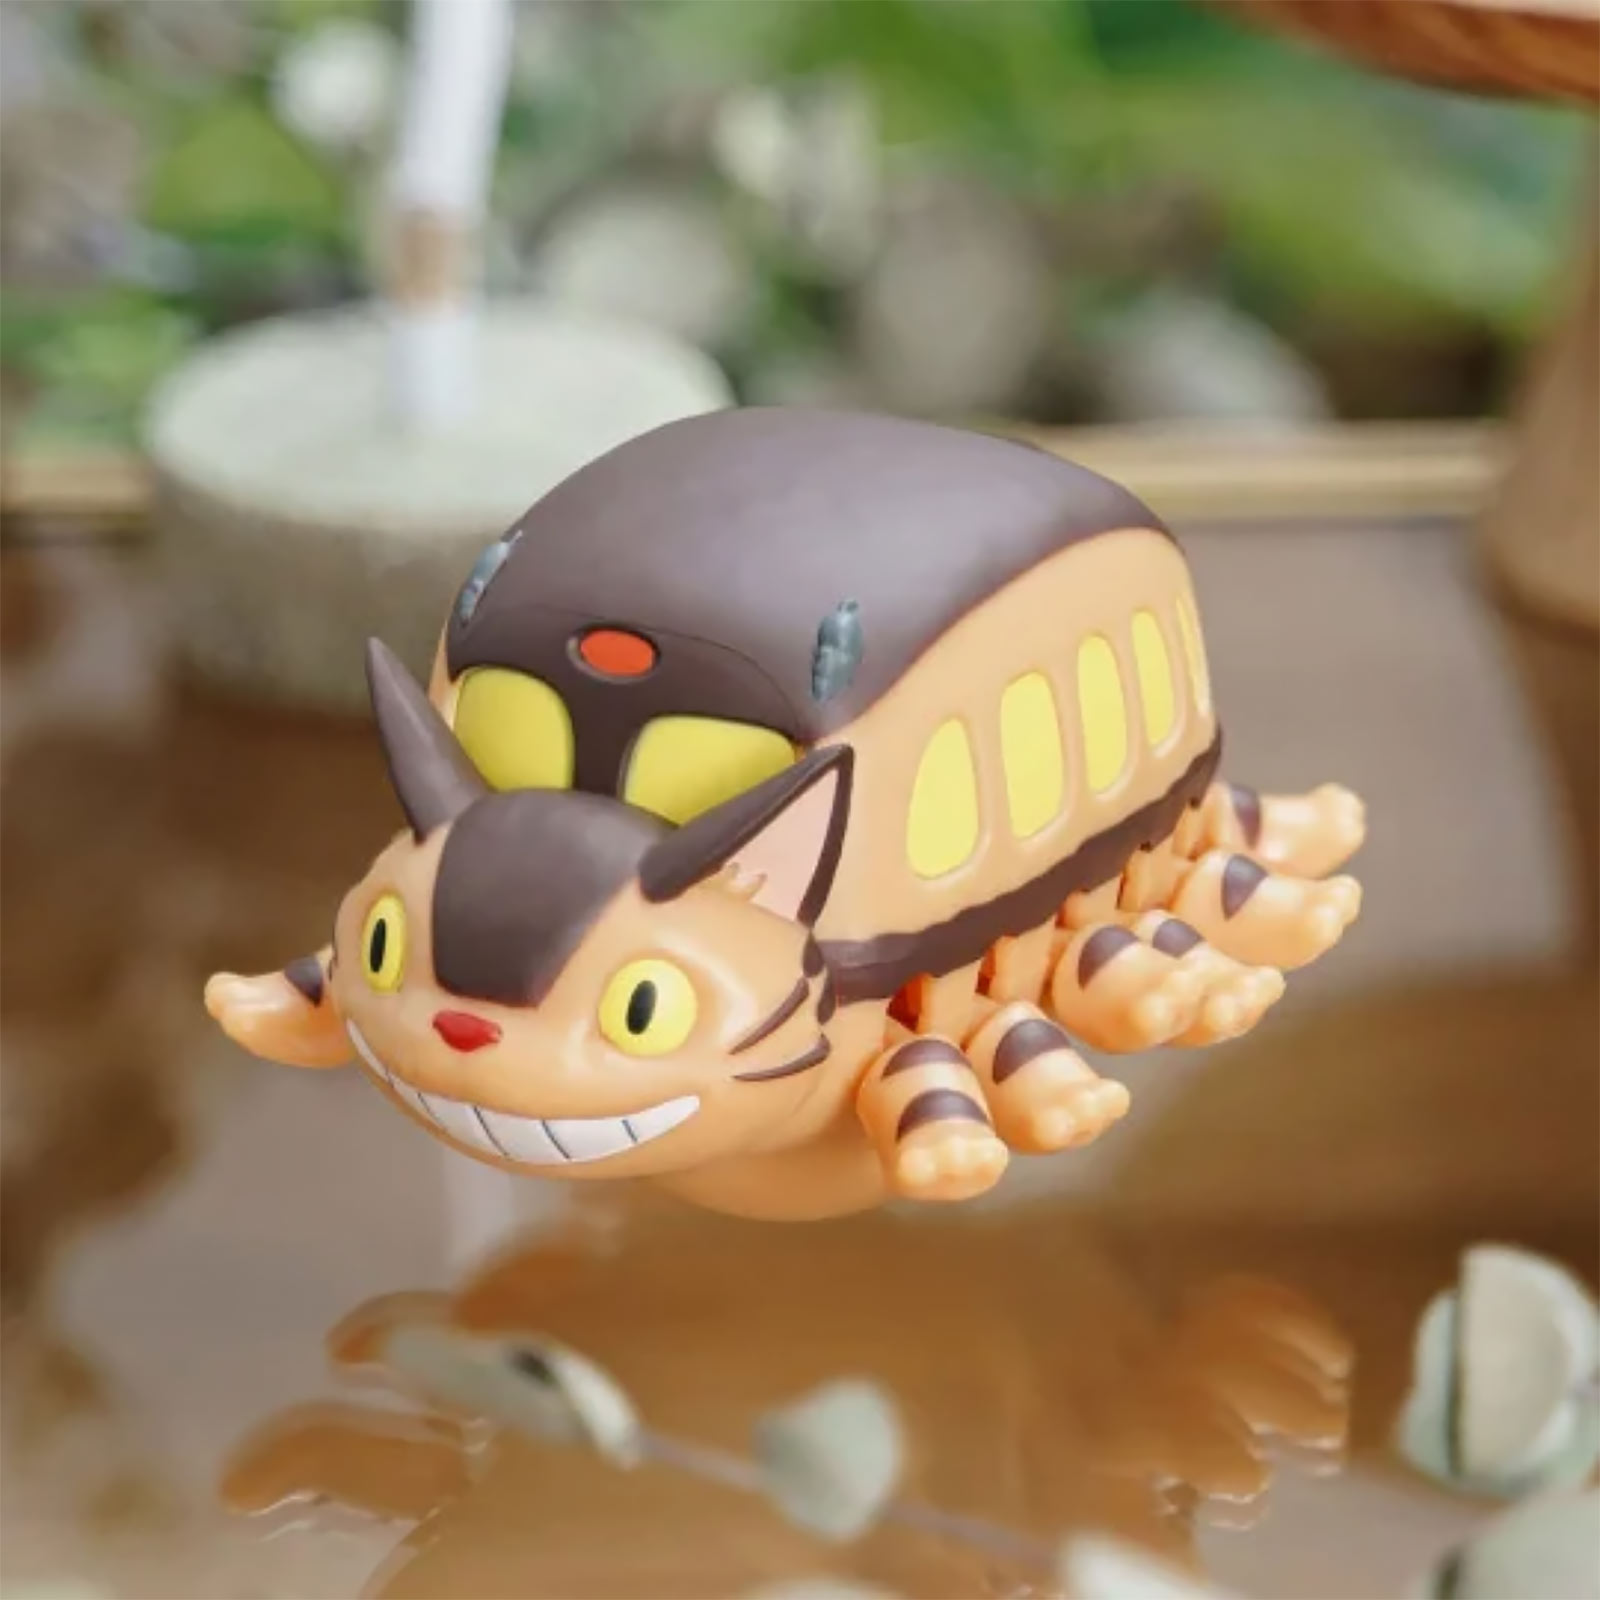 Totoro - Catbus Plush Figure